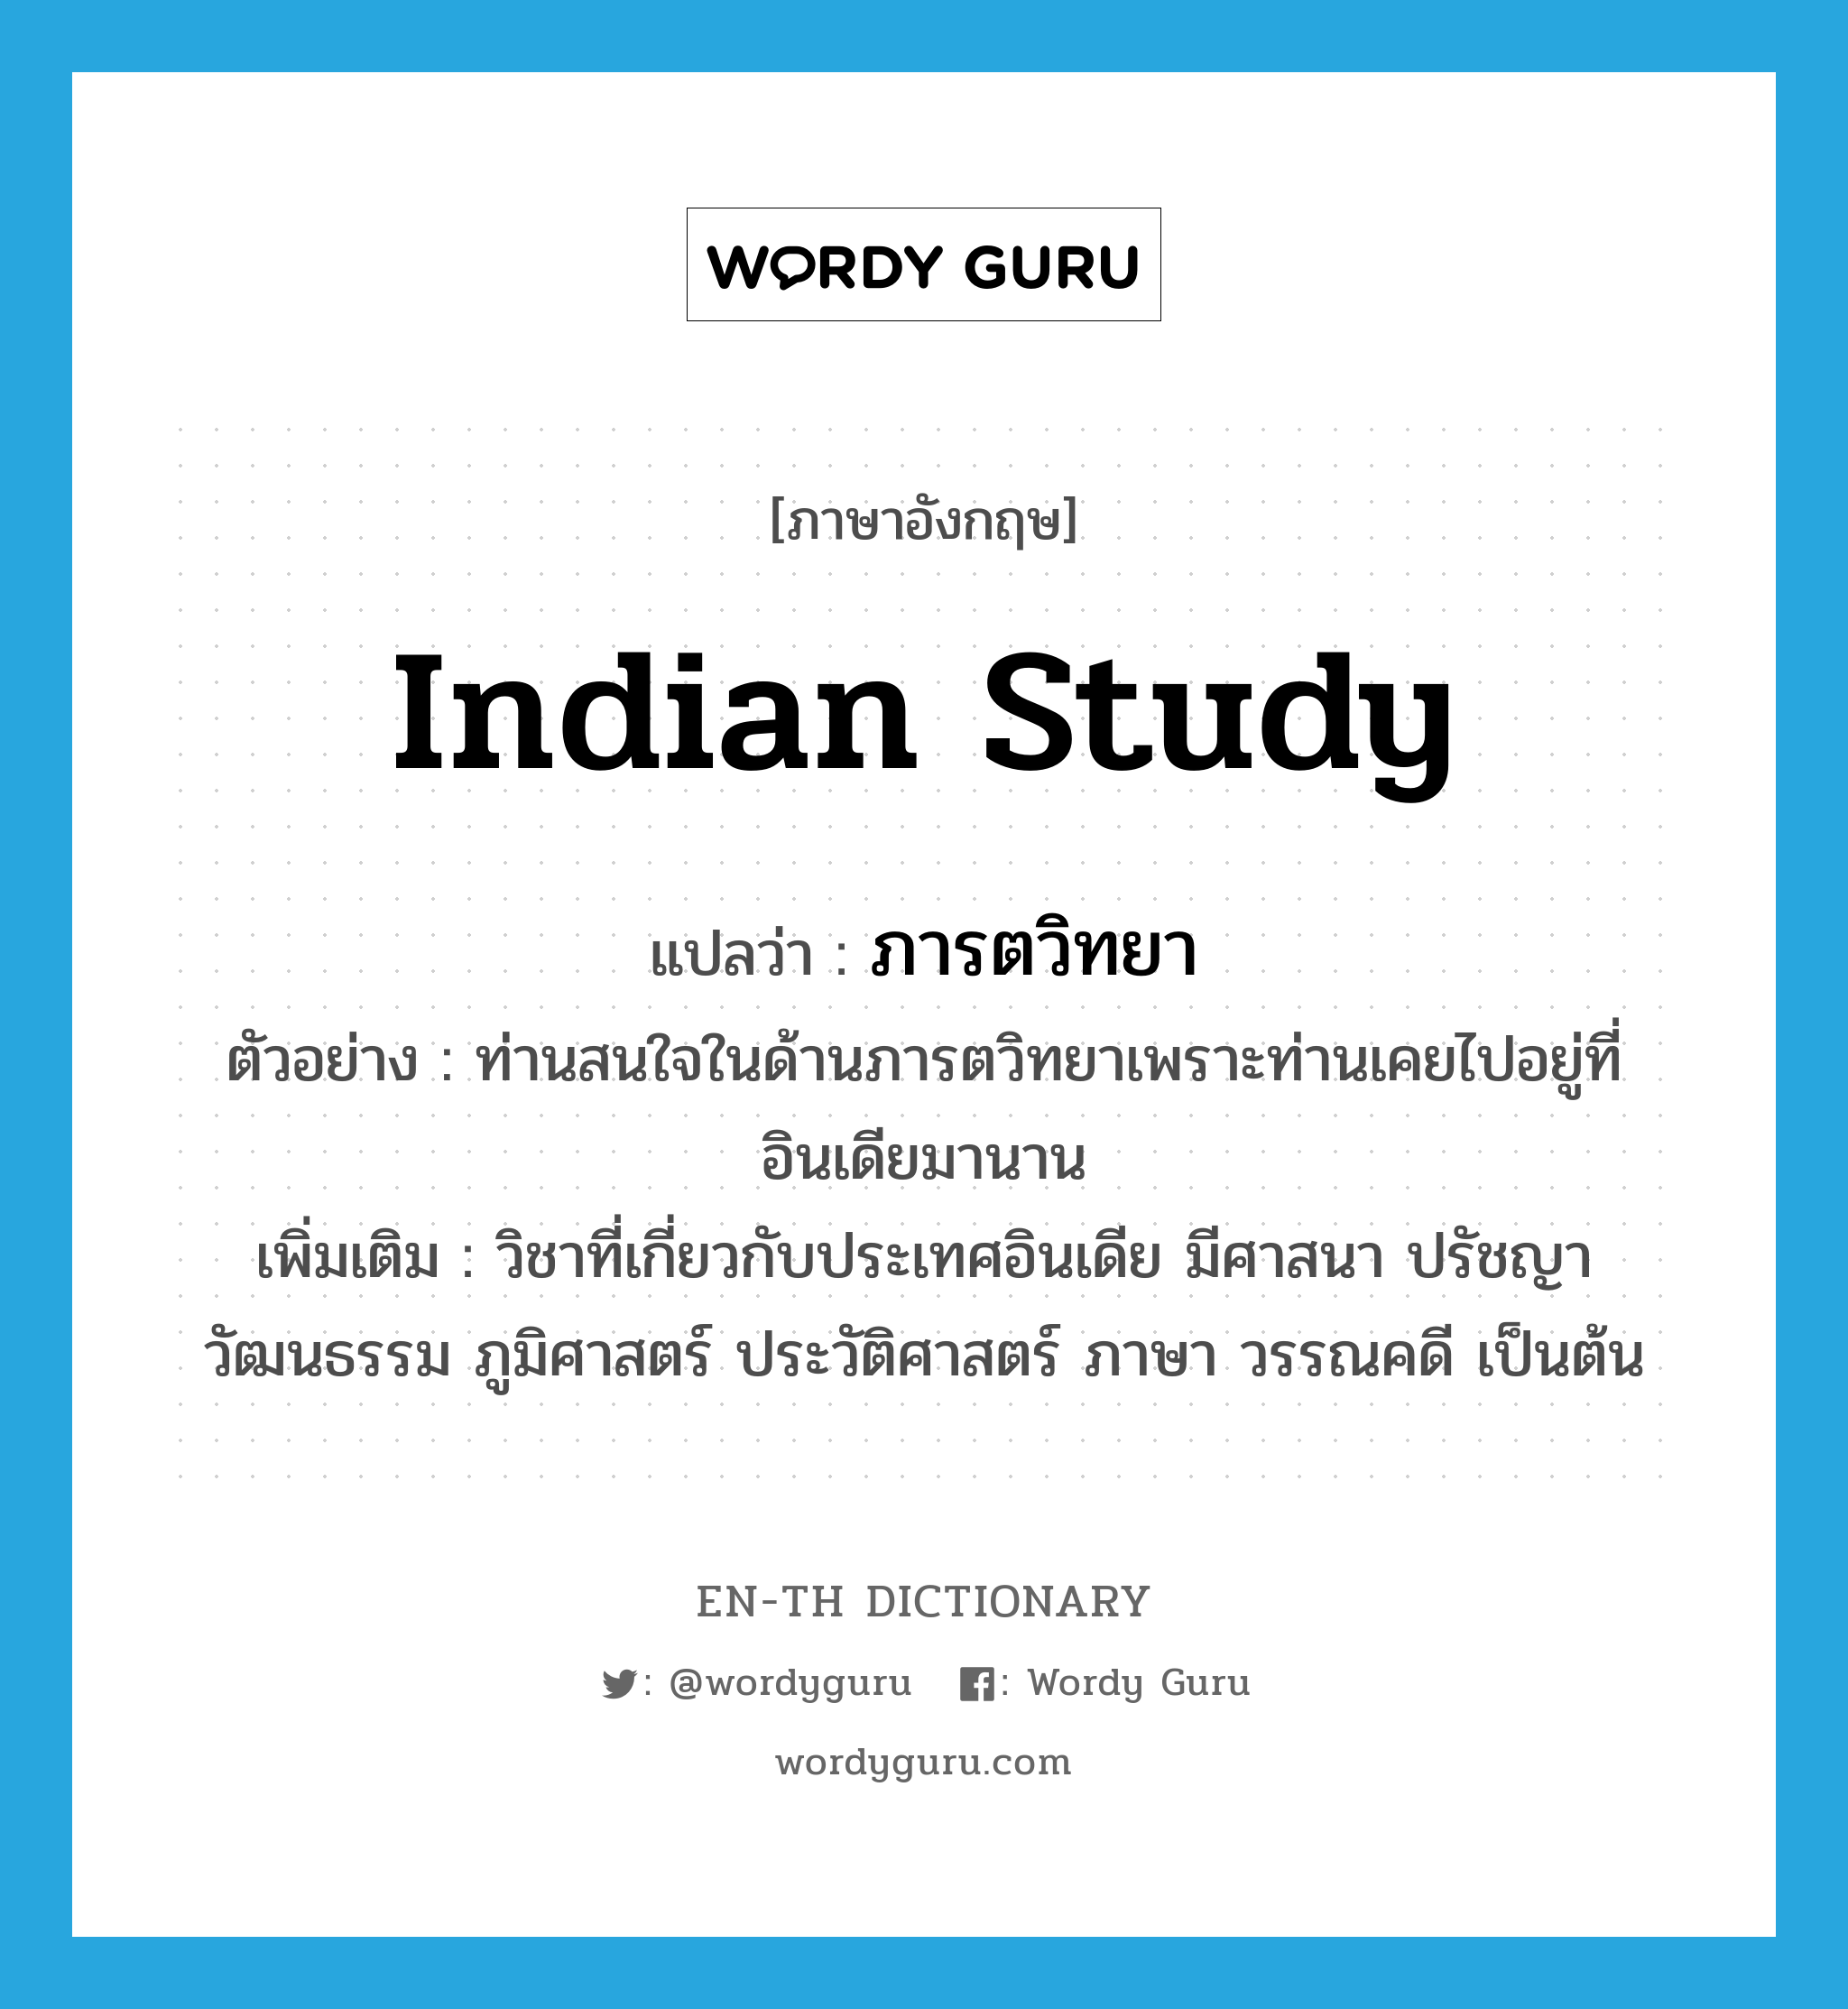 Indian study แปลว่า?, คำศัพท์ภาษาอังกฤษ Indian study แปลว่า ภารตวิทยา ประเภท N ตัวอย่าง ท่านสนใจในด้านภารตวิทยาเพราะท่านเคยไปอยู่ที่อินเดียมานาน เพิ่มเติม วิชาที่เกี่ยวกับประเทศอินเดีย มีศาสนา ปรัชญา วัฒนธรรม ภูมิศาสตร์ ประวัติศาสตร์ ภาษา วรรณคดี เป็นต้น หมวด N